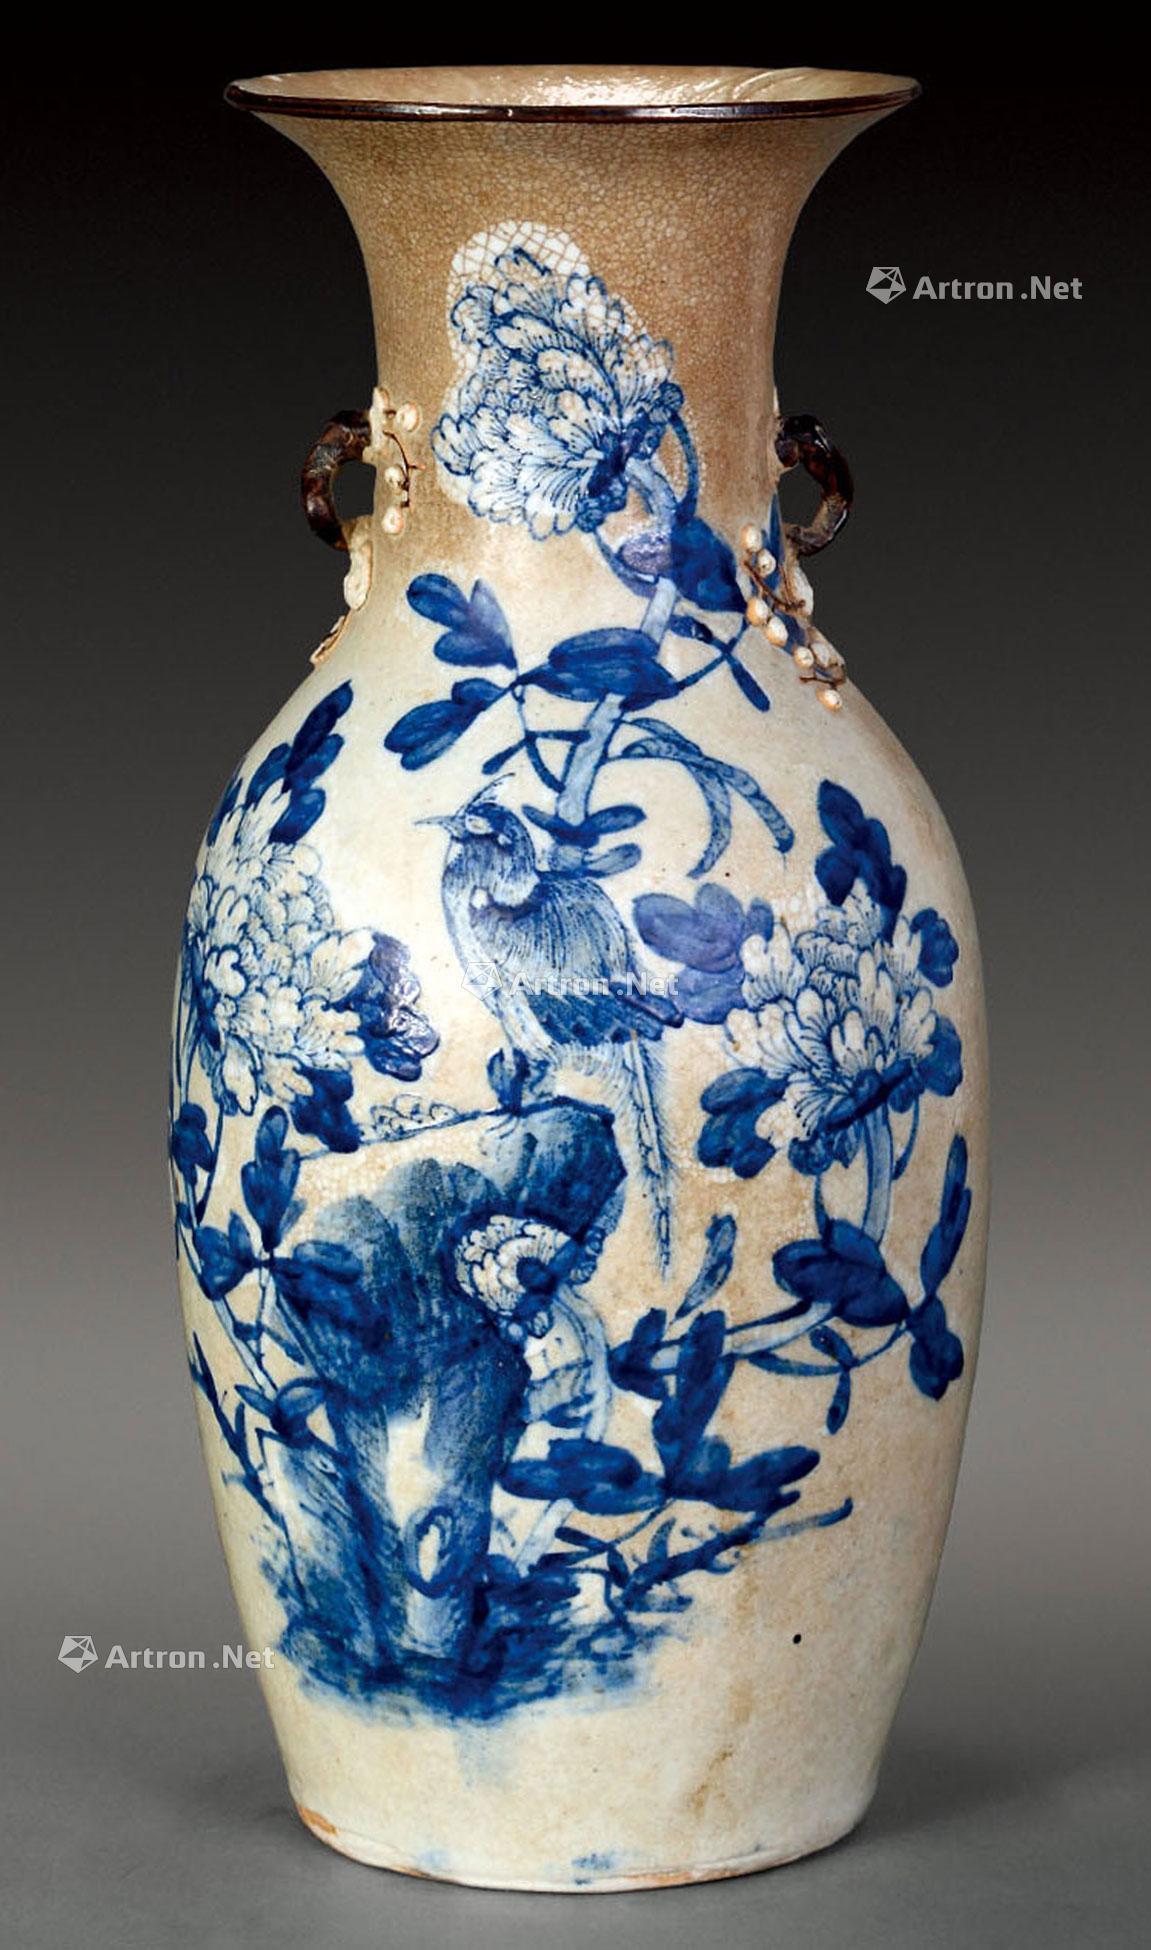 *1906 清光绪 哥瓷青花花卉瓶